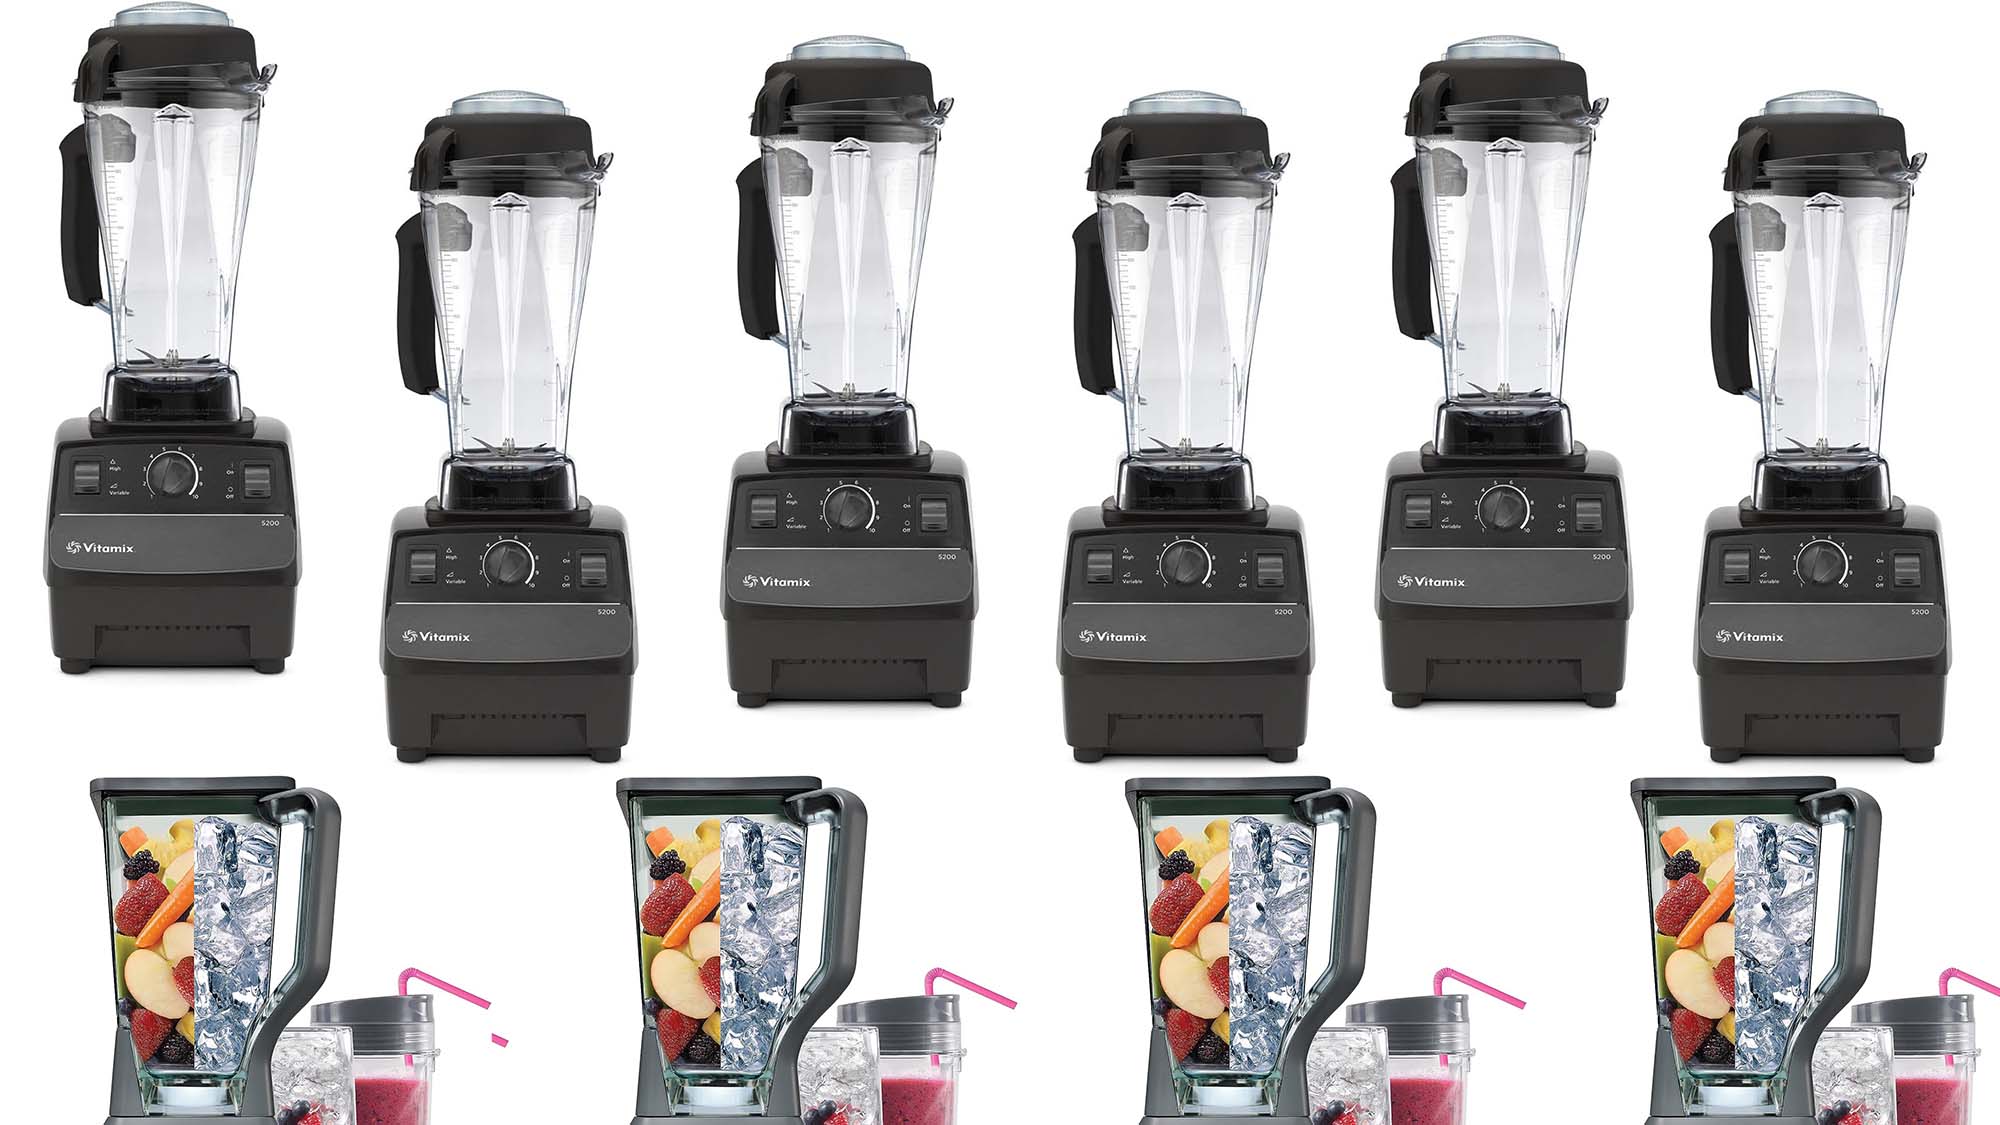 Best blender deals: Vitamix, Ninja, and Nutribullet blenders are